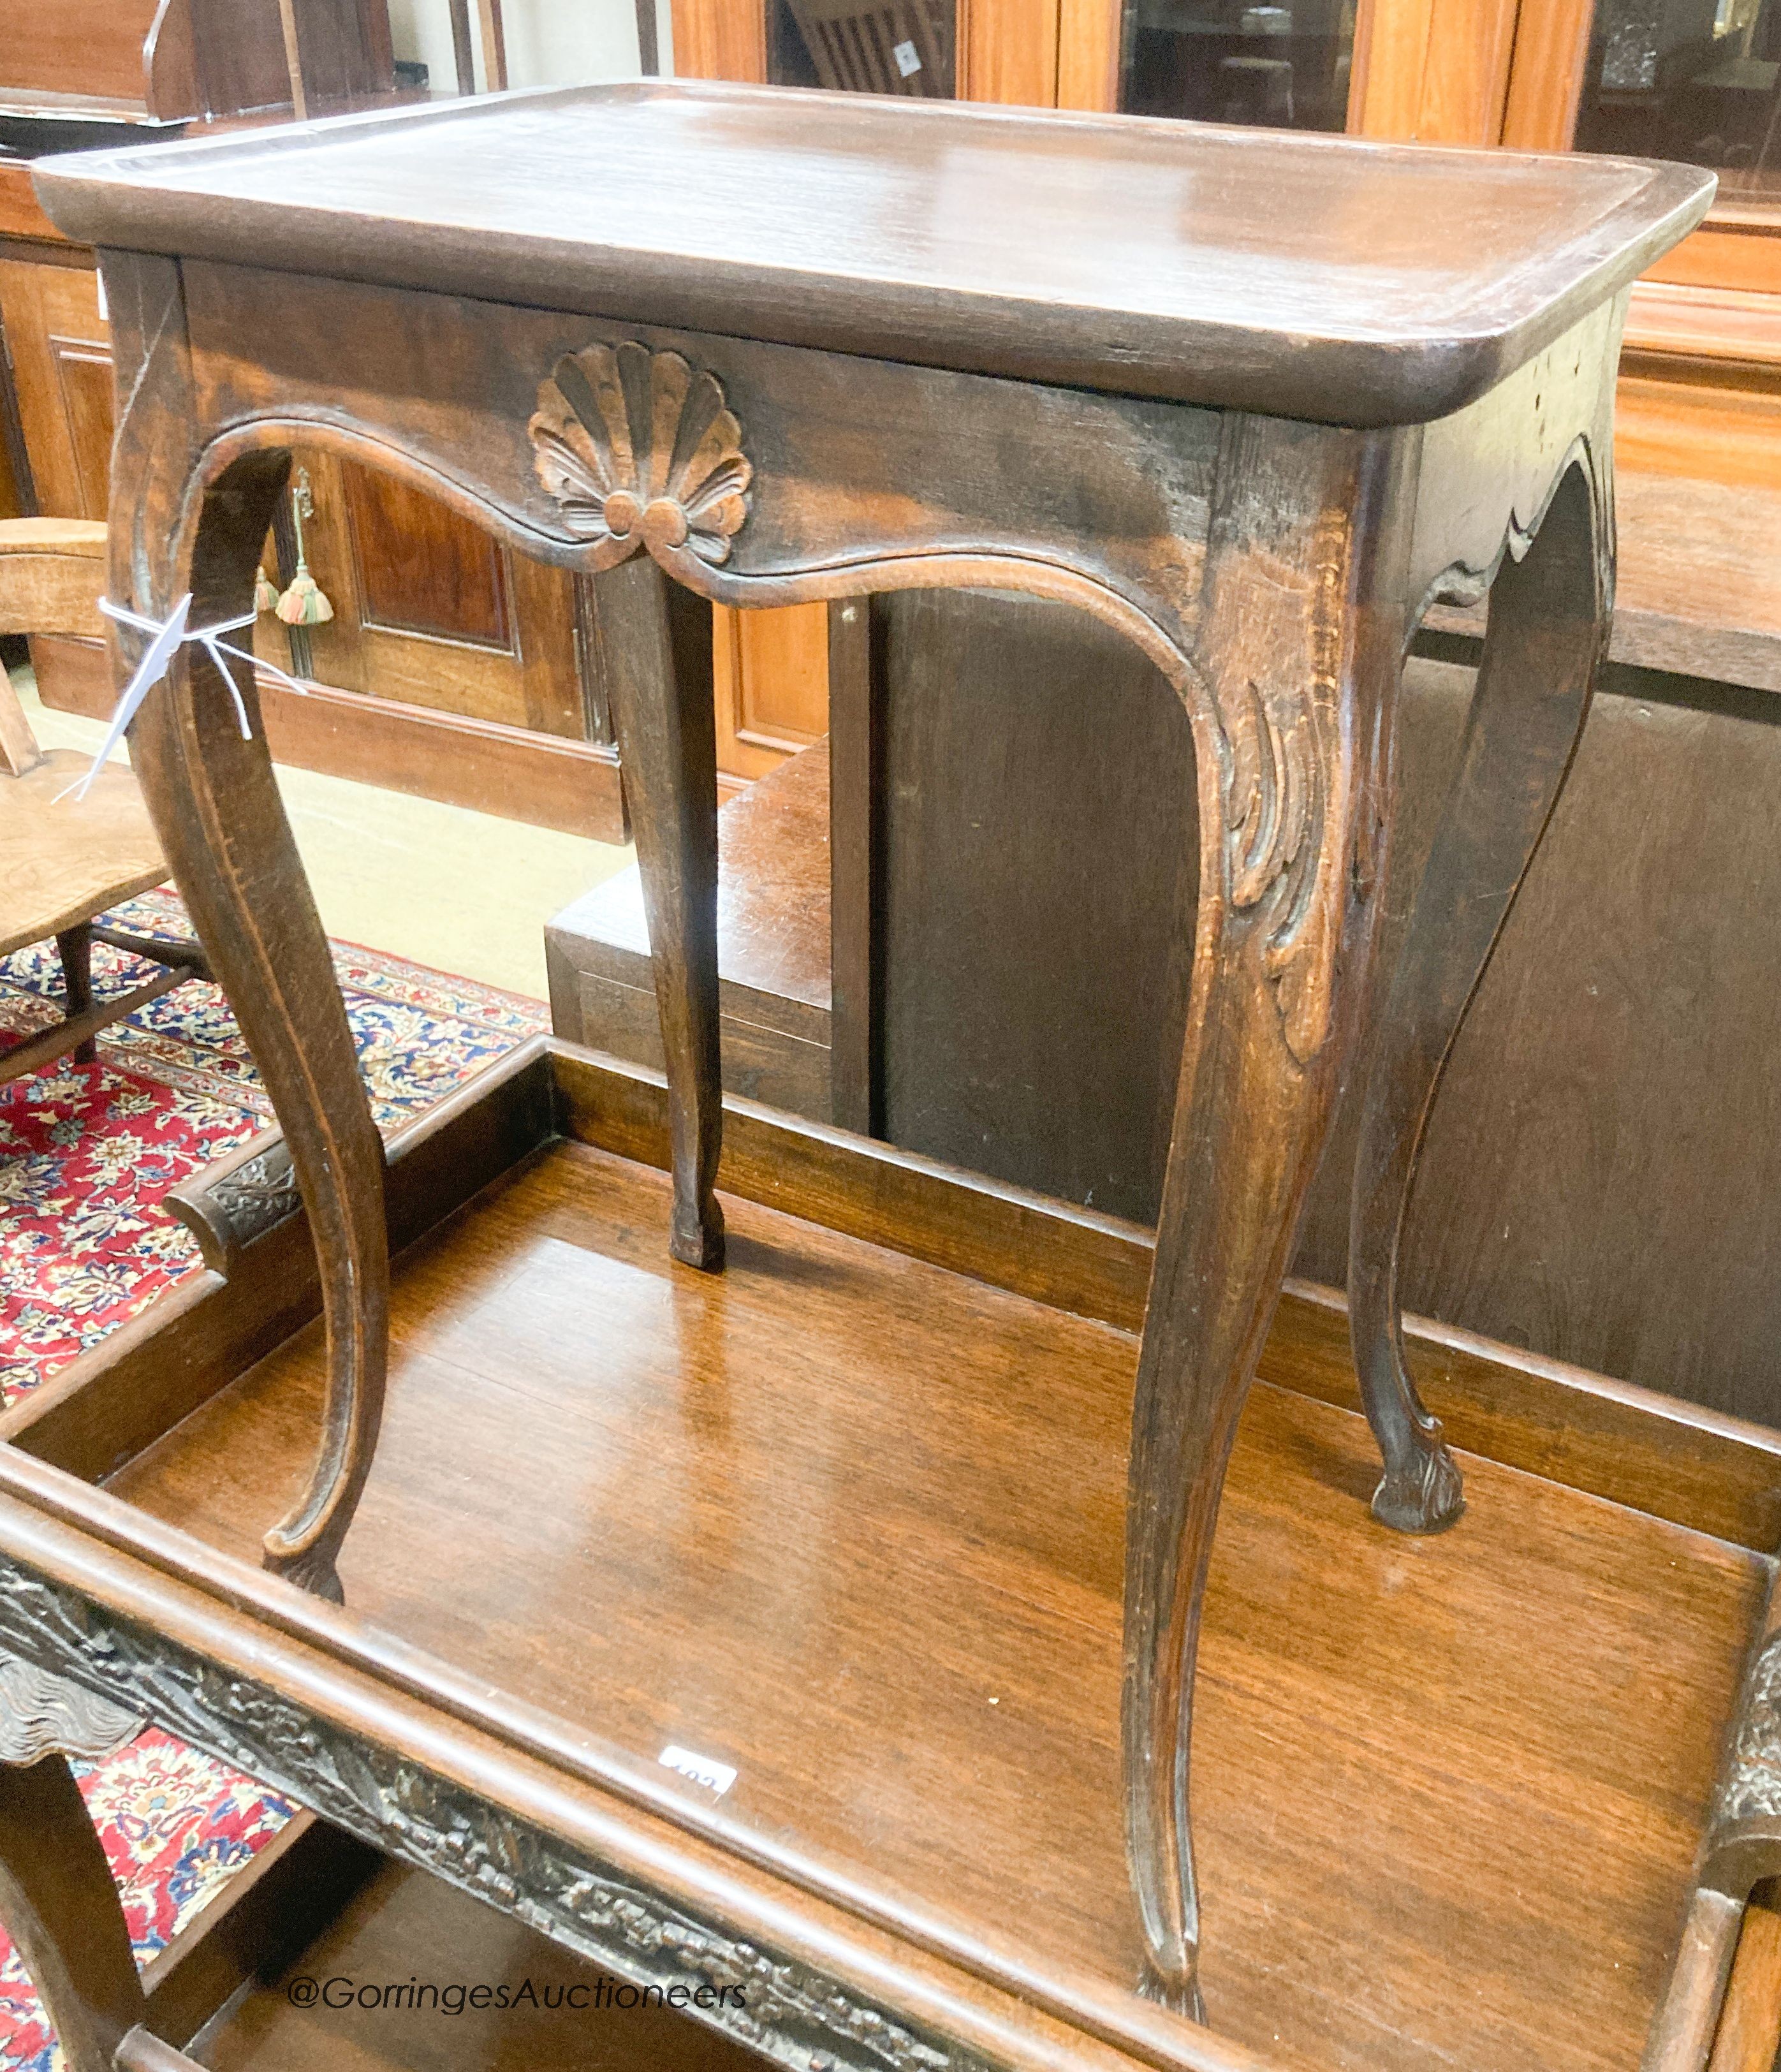 A French oak cabriole leg table, width 45cm, depth 32cm, height 59cm